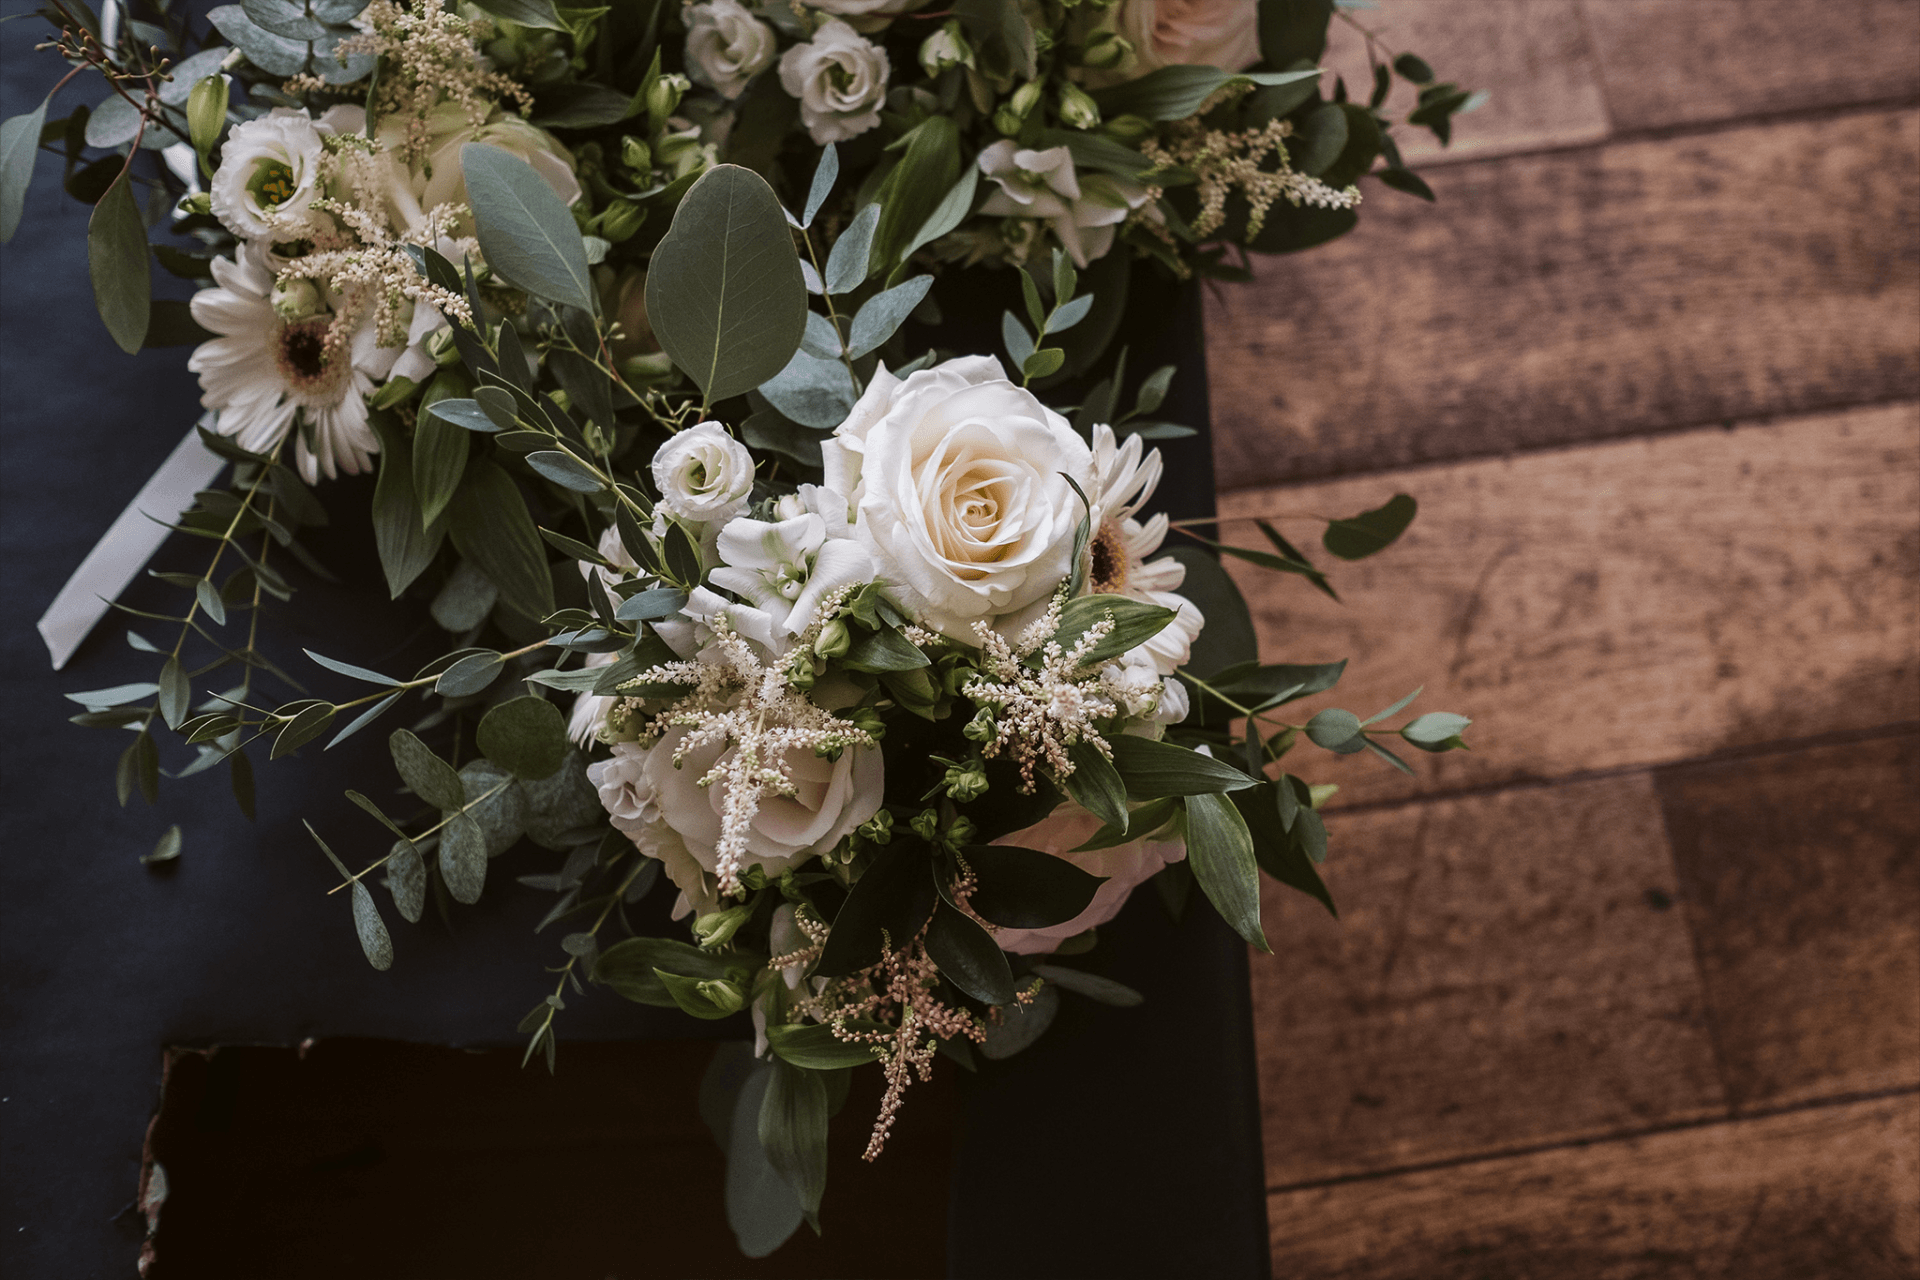 Rustic bridesmaid bouquets